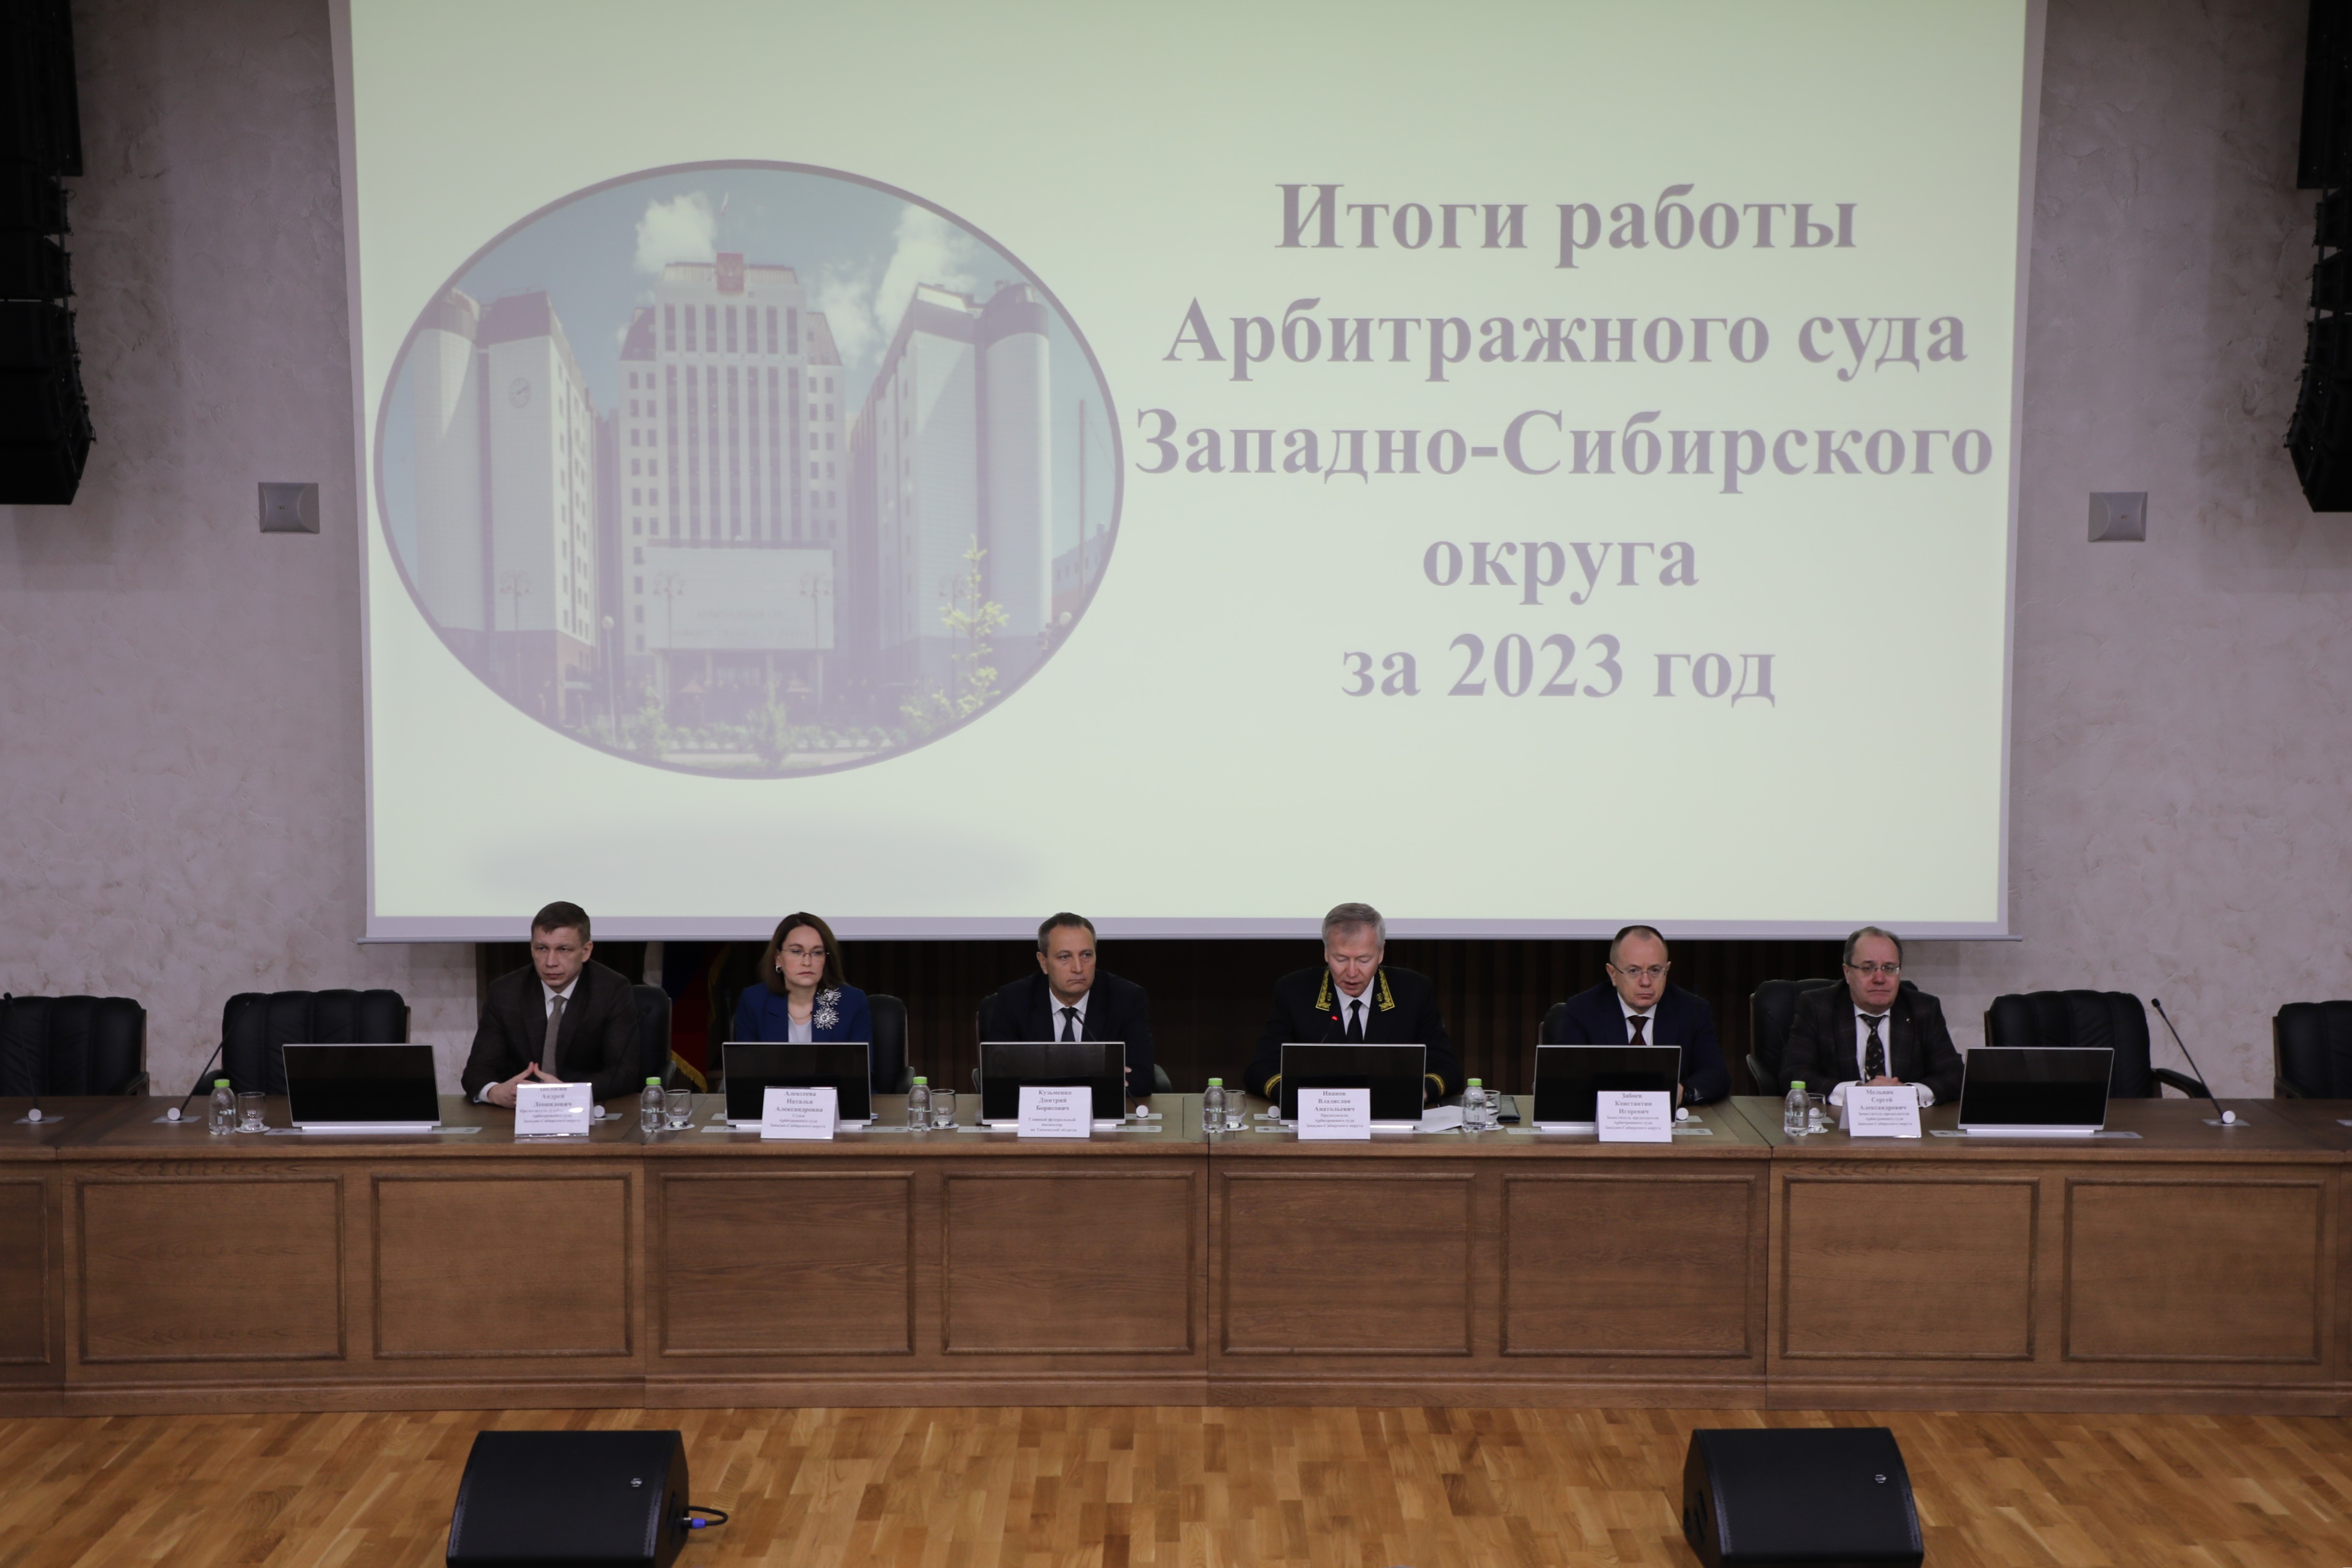 Арбитражным судом Западно-Сибирского округа подведены итоги работы за 2023 год